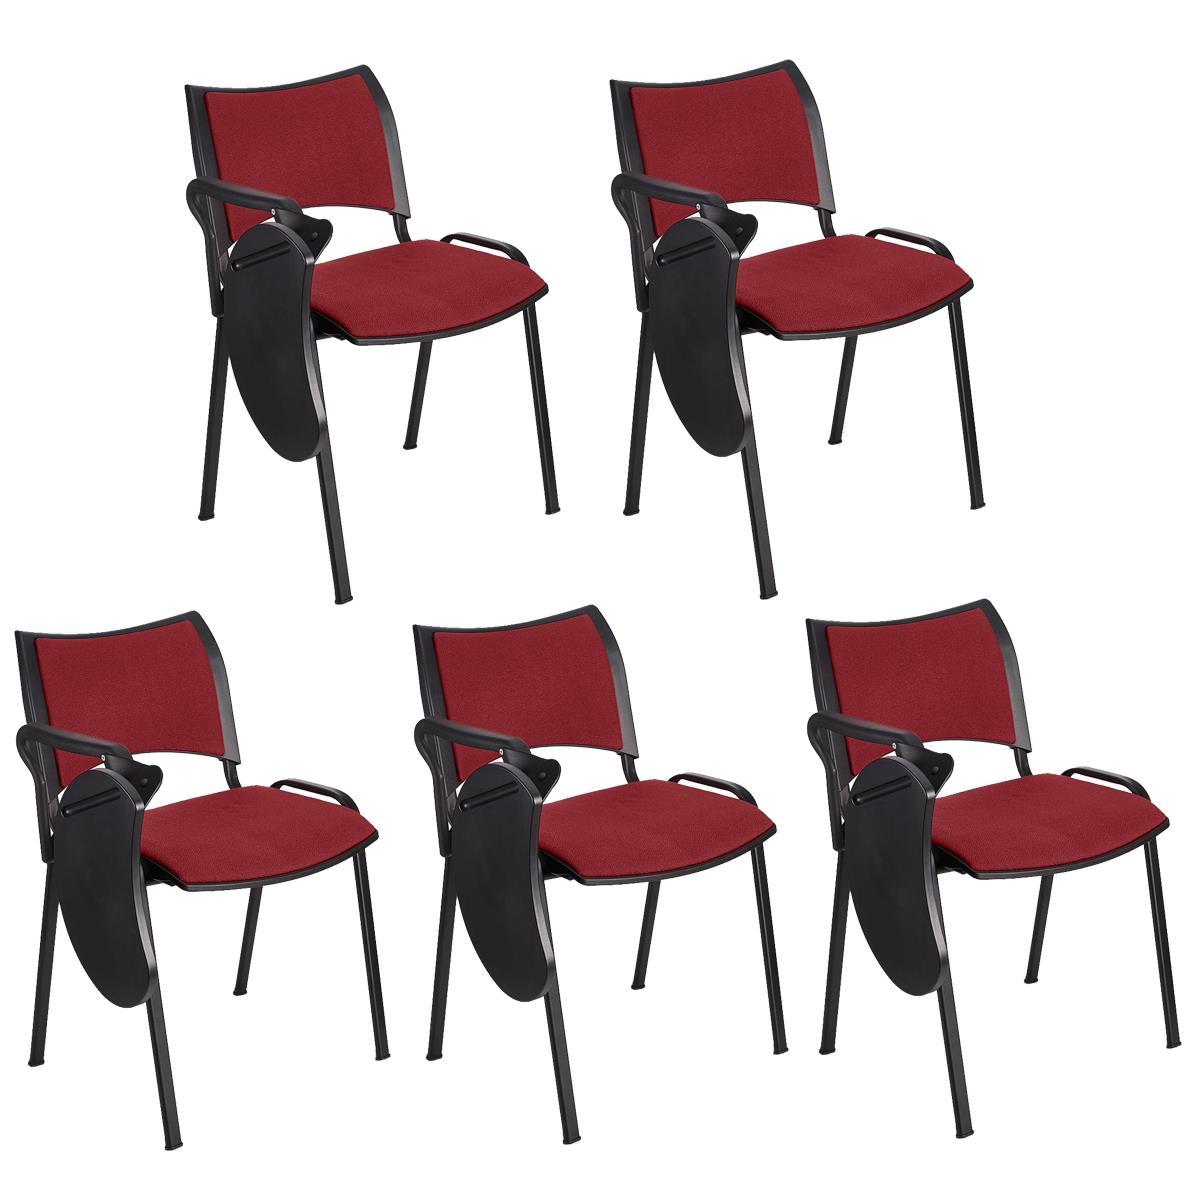 Lote 5 Cadeiras de Visita ROMEL COM PALMATÓRIA, Empilhável, Pernas Pretas, Em Pano, Bordeaux